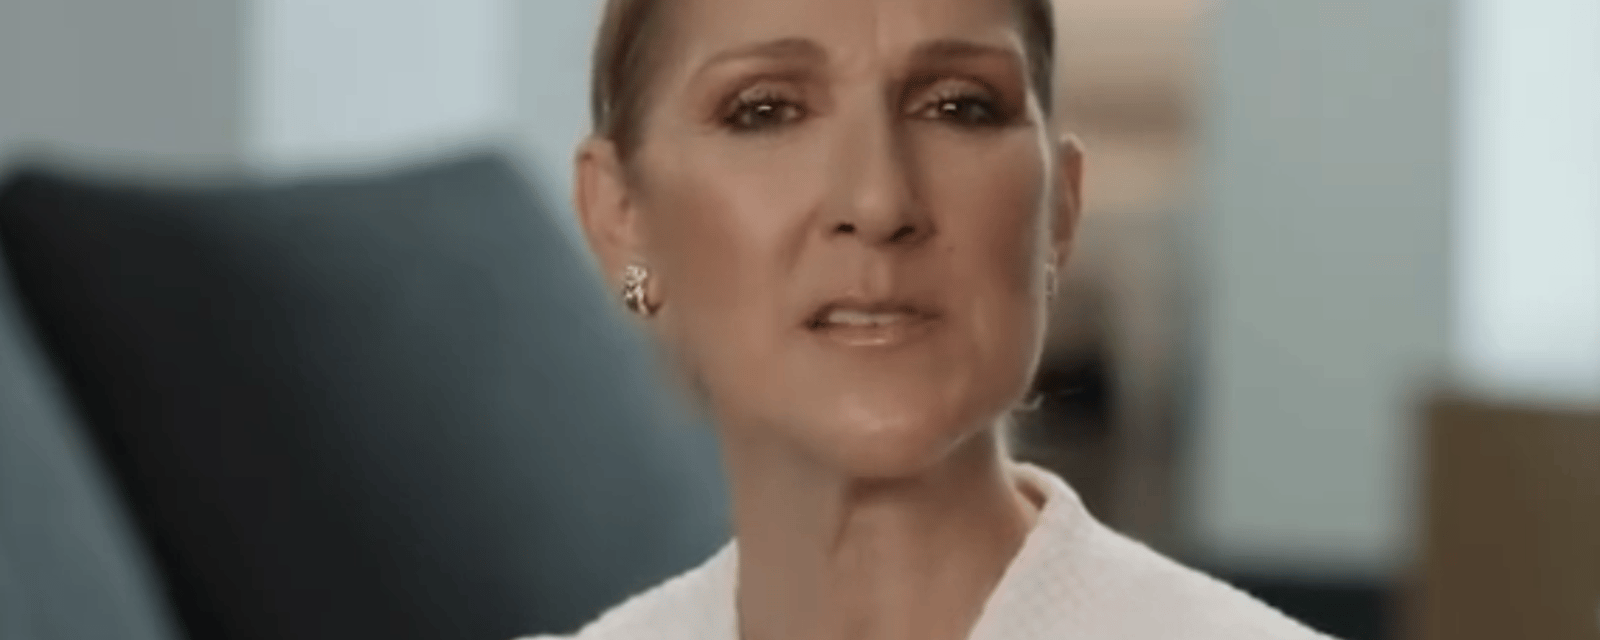 En deuil, Céline Dion partage un touchant message